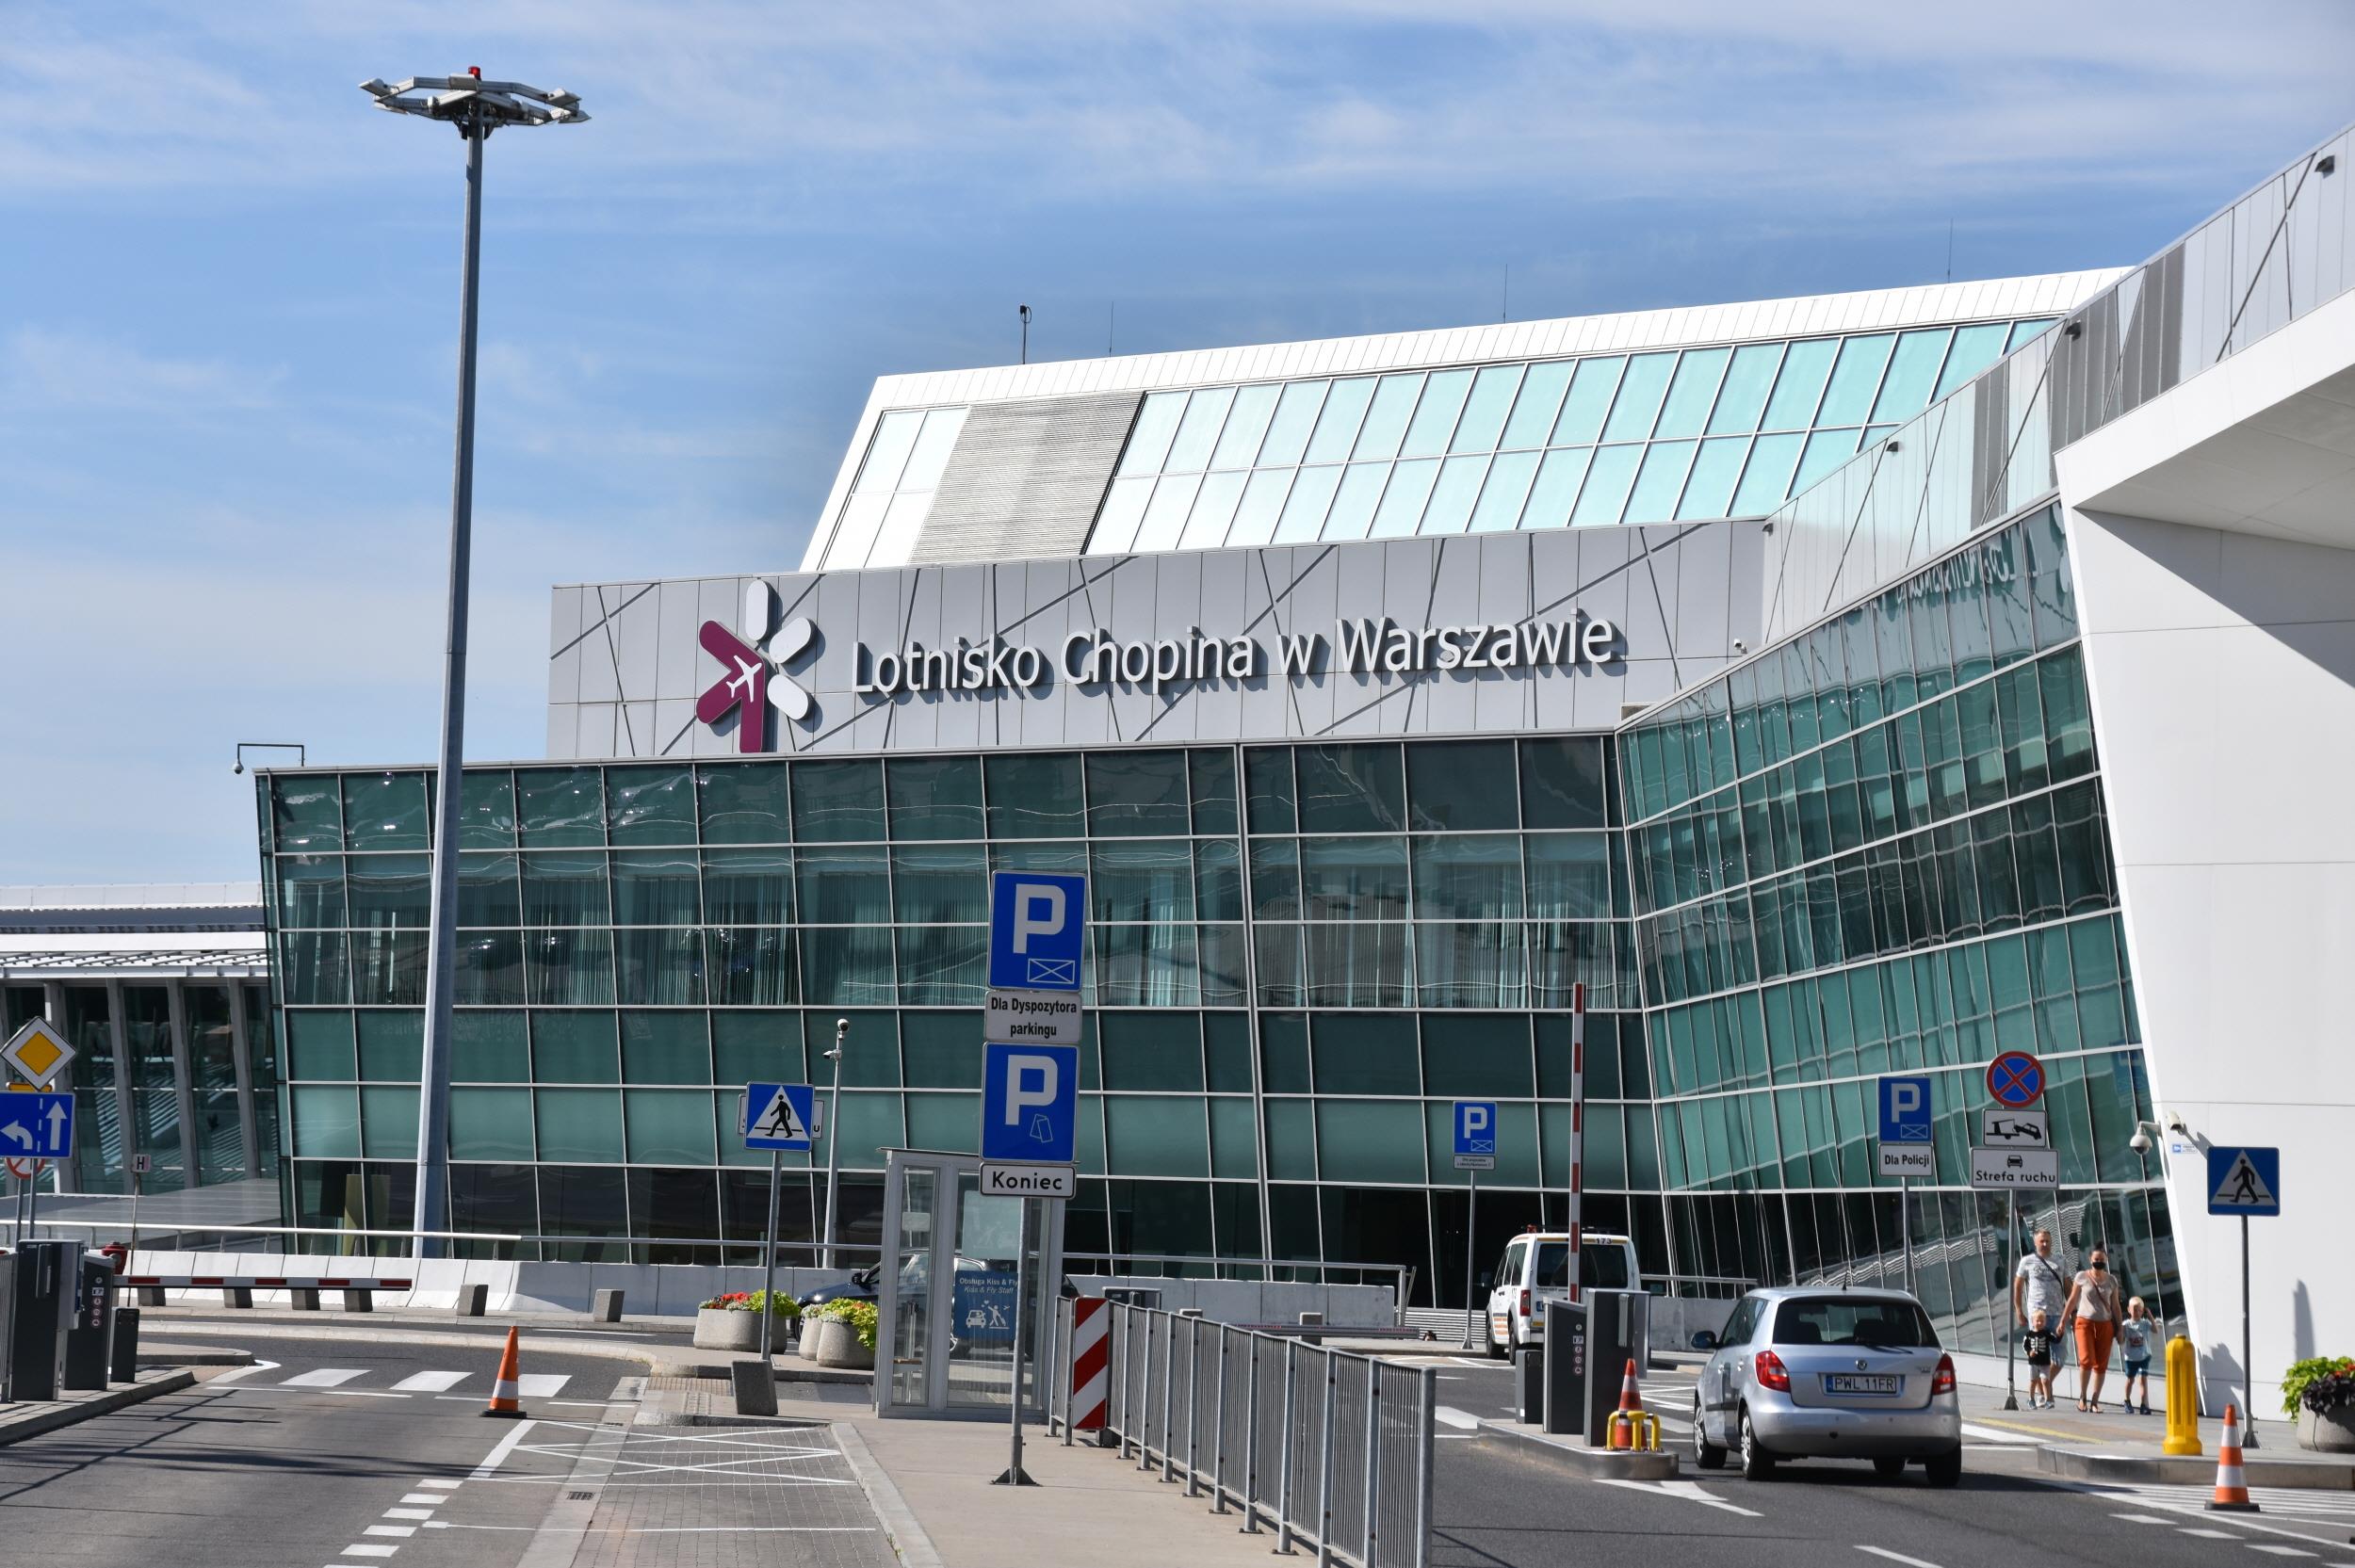 인천공항 출국 - 바르샤바공항 입국  Warsaw Chopin International Airport